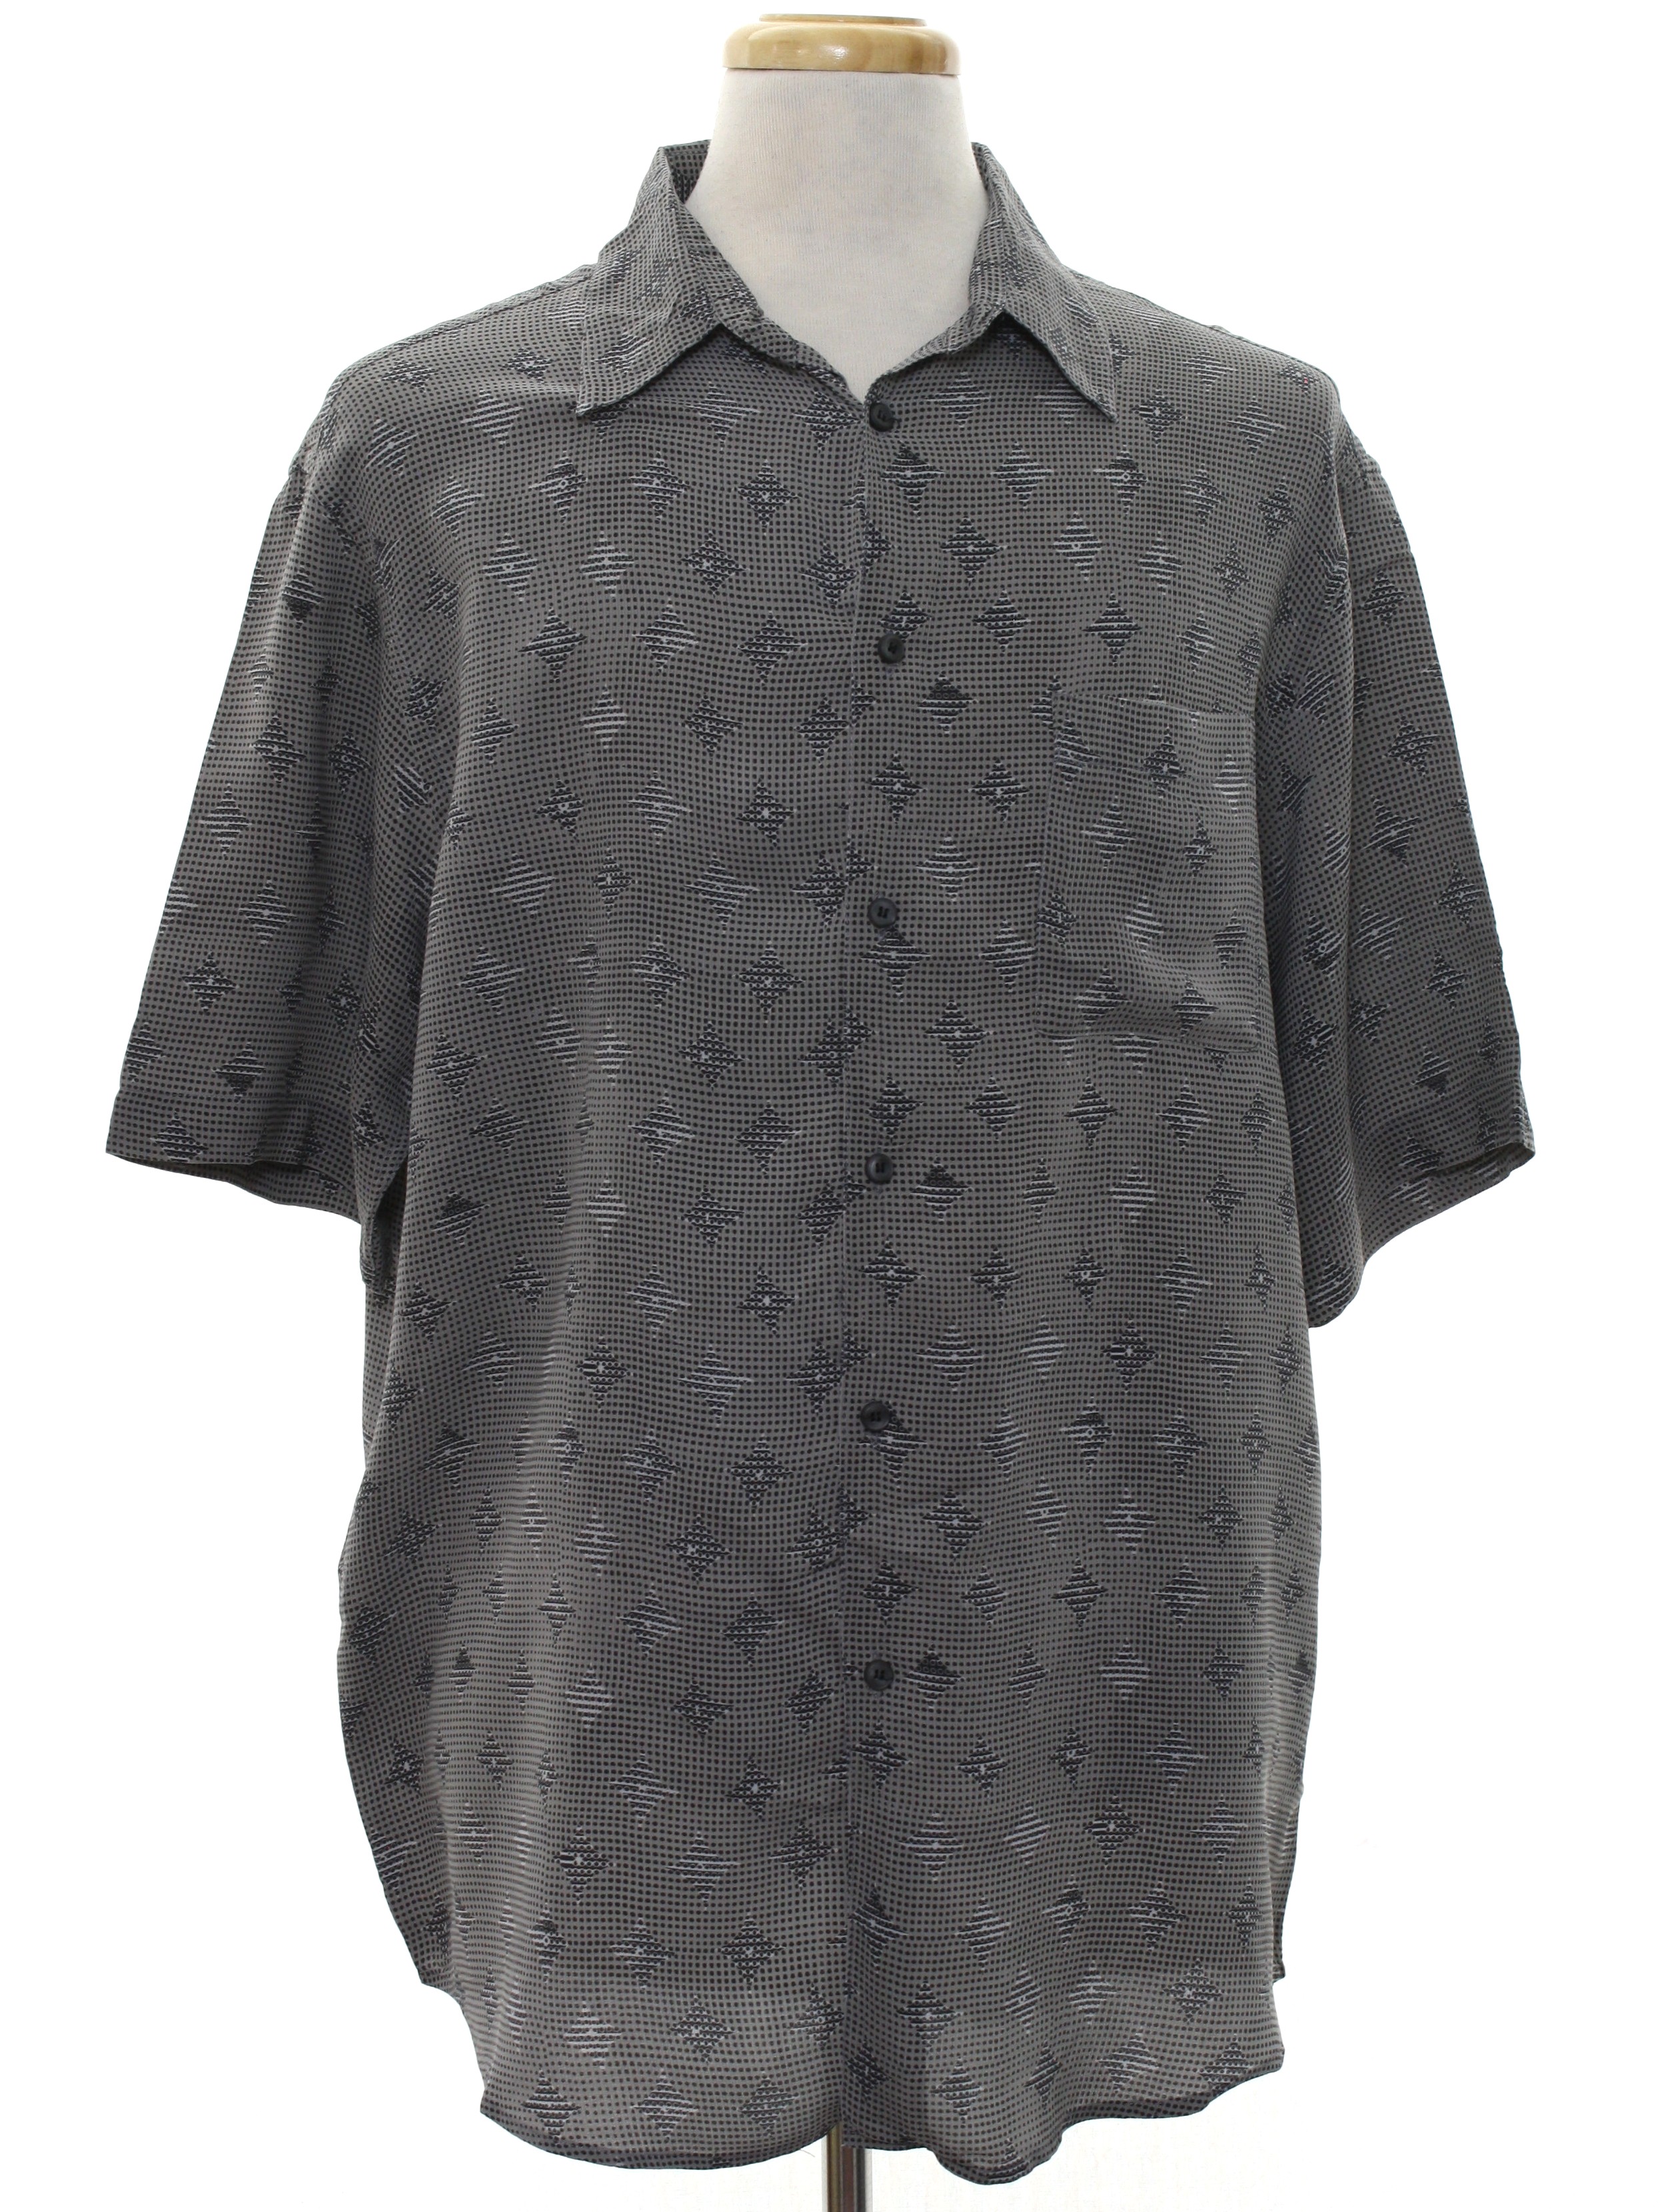 Retro 1980's Shirt (Murano) : 80s -Murano- Mens gray background, black ...